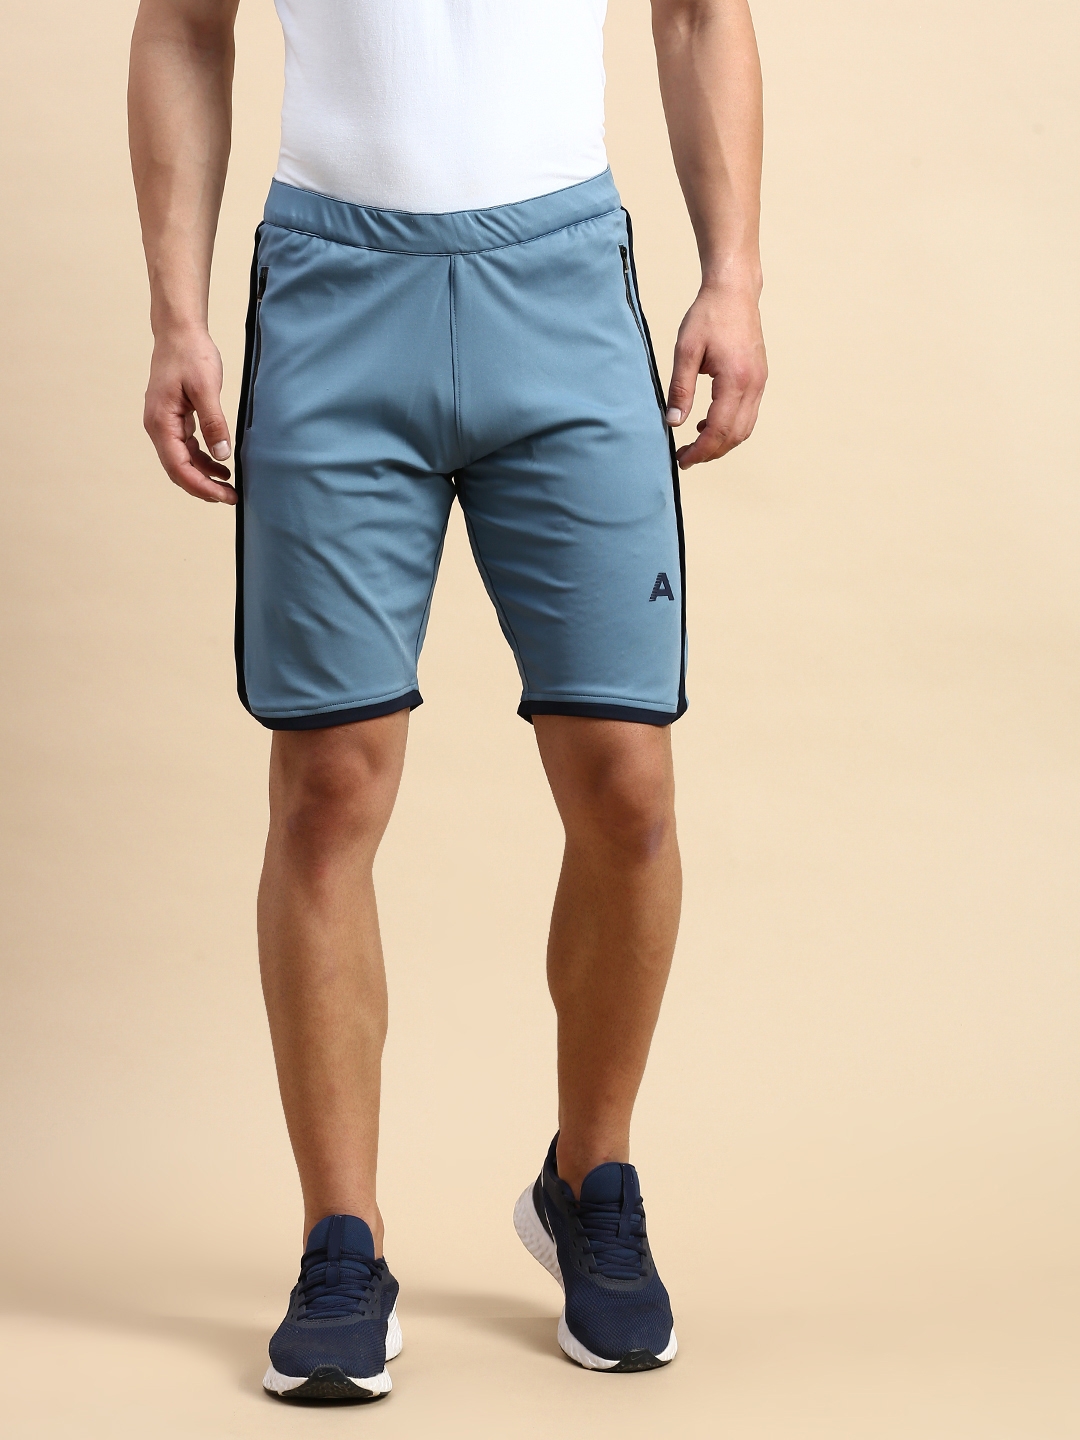 Showoff | SHOWOFF Men's Knee Length Solid Blue Mid-Rise Regular Shorts 0